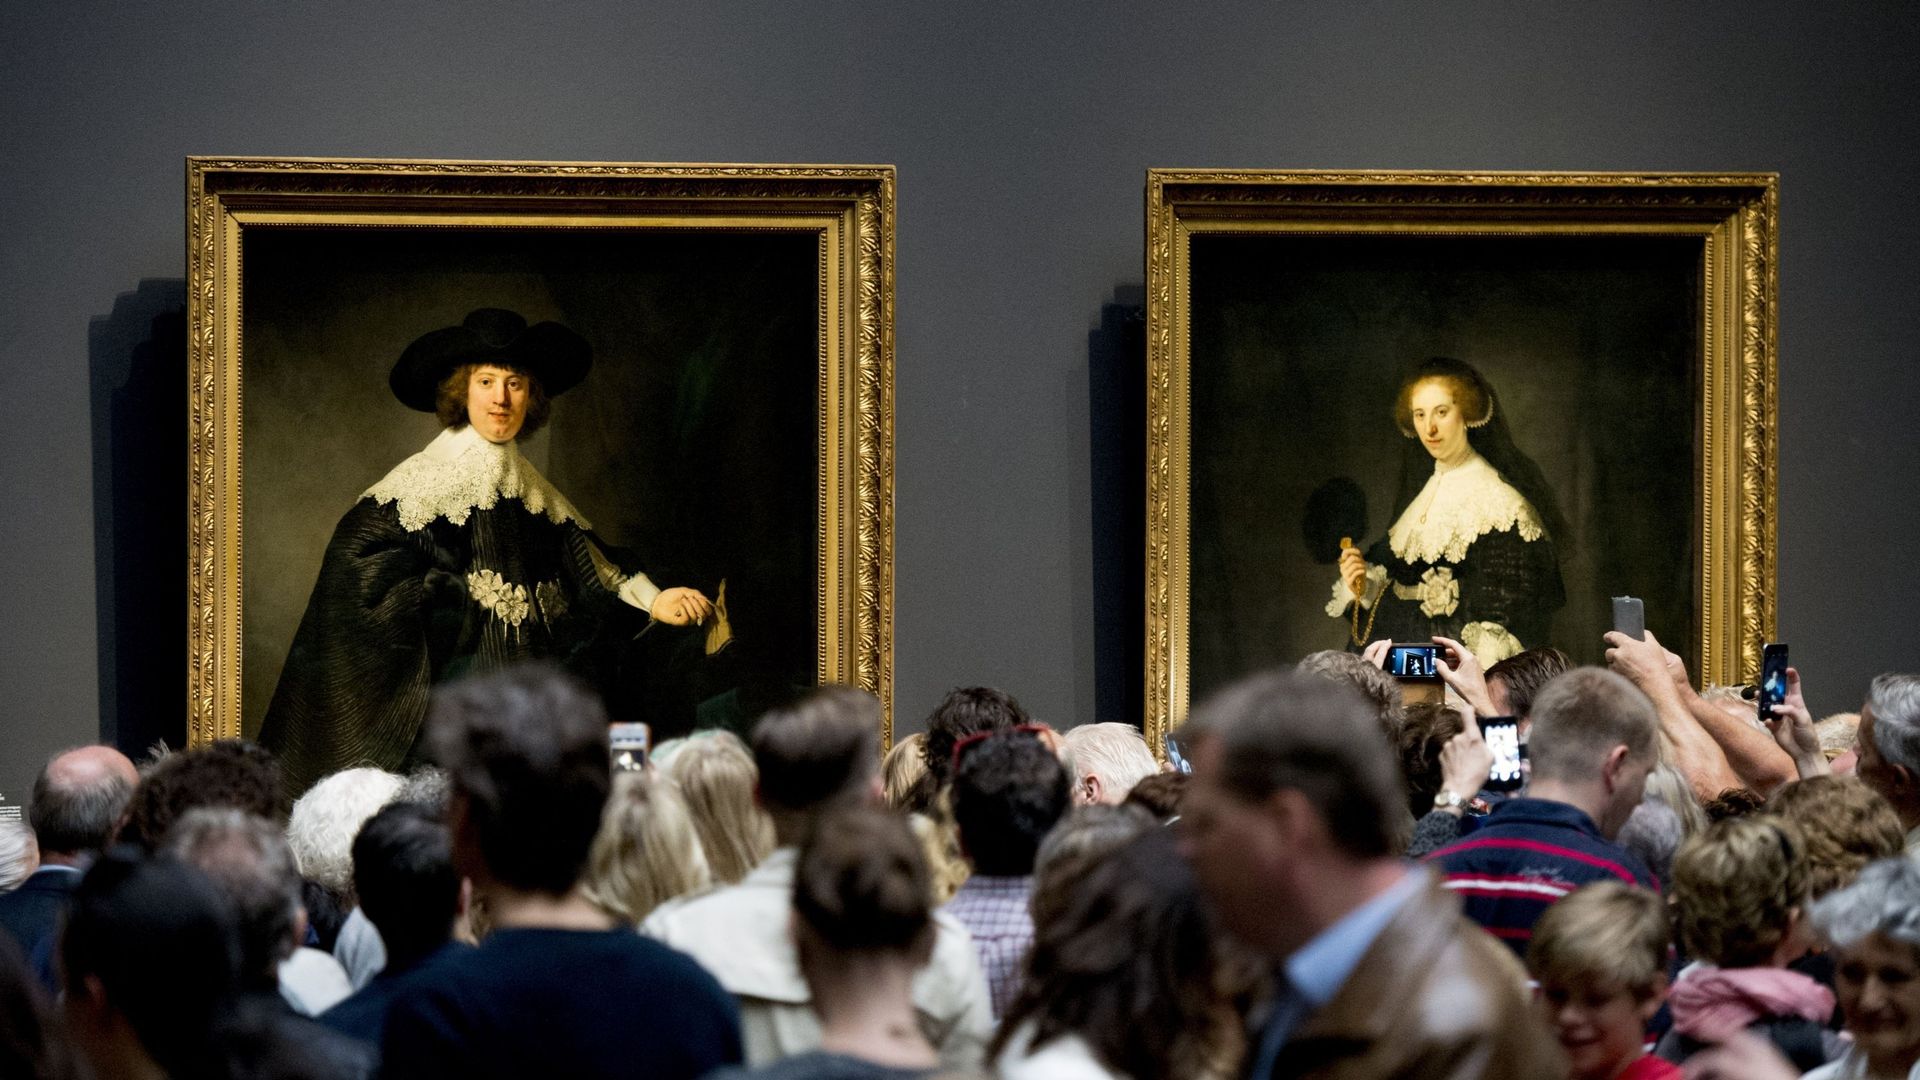 Des visiteurs se tiennent devant les deux tableaux 'Marten' et 'Oopjen' de Rembrandt (1606-1669) au Rijksmuseum d’Amsterdam, le 2 juillet 2016, lors de la première journée publique pour les tableaux, acquis conjointement par les Pays-Bas et la France, et 